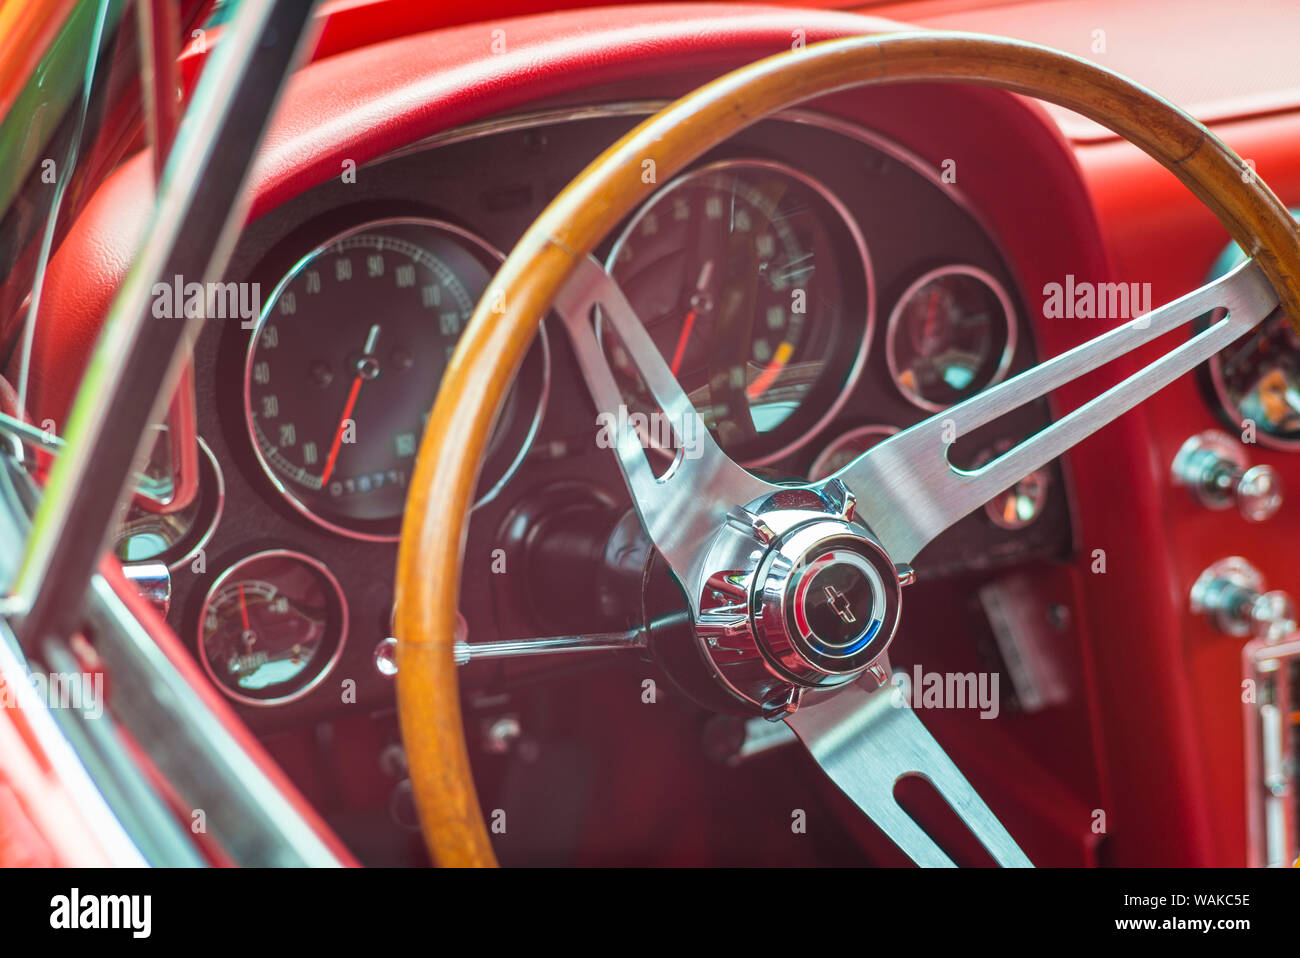 USA, Massachusetts, Beverly. Voitures anciennes, 1960 Corvette Sting Ray, de l'intérieur Banque D'Images